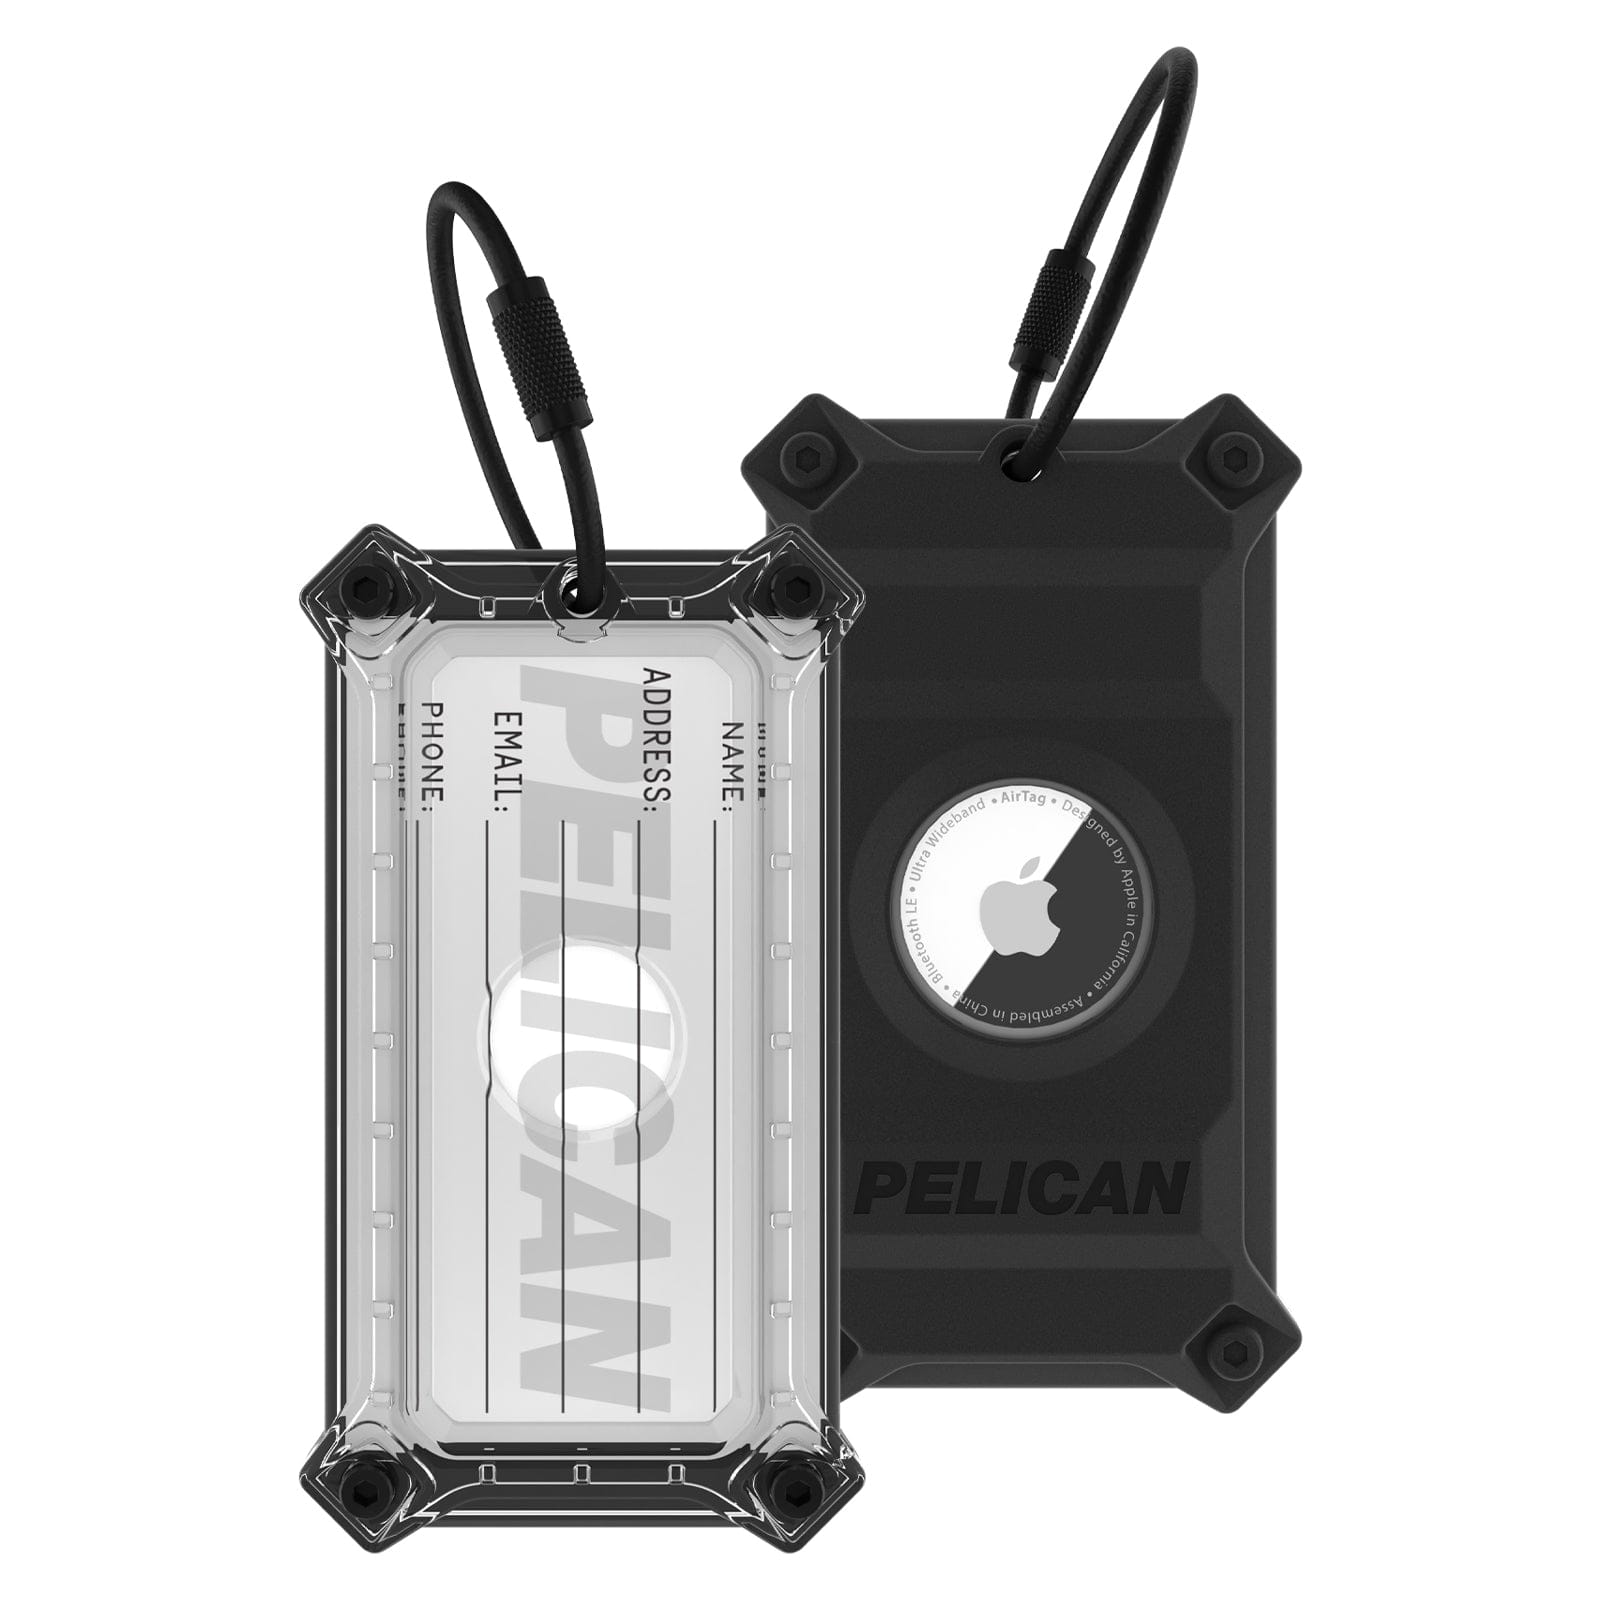 Pelican AirTag Protector Luggage Tag (Black)